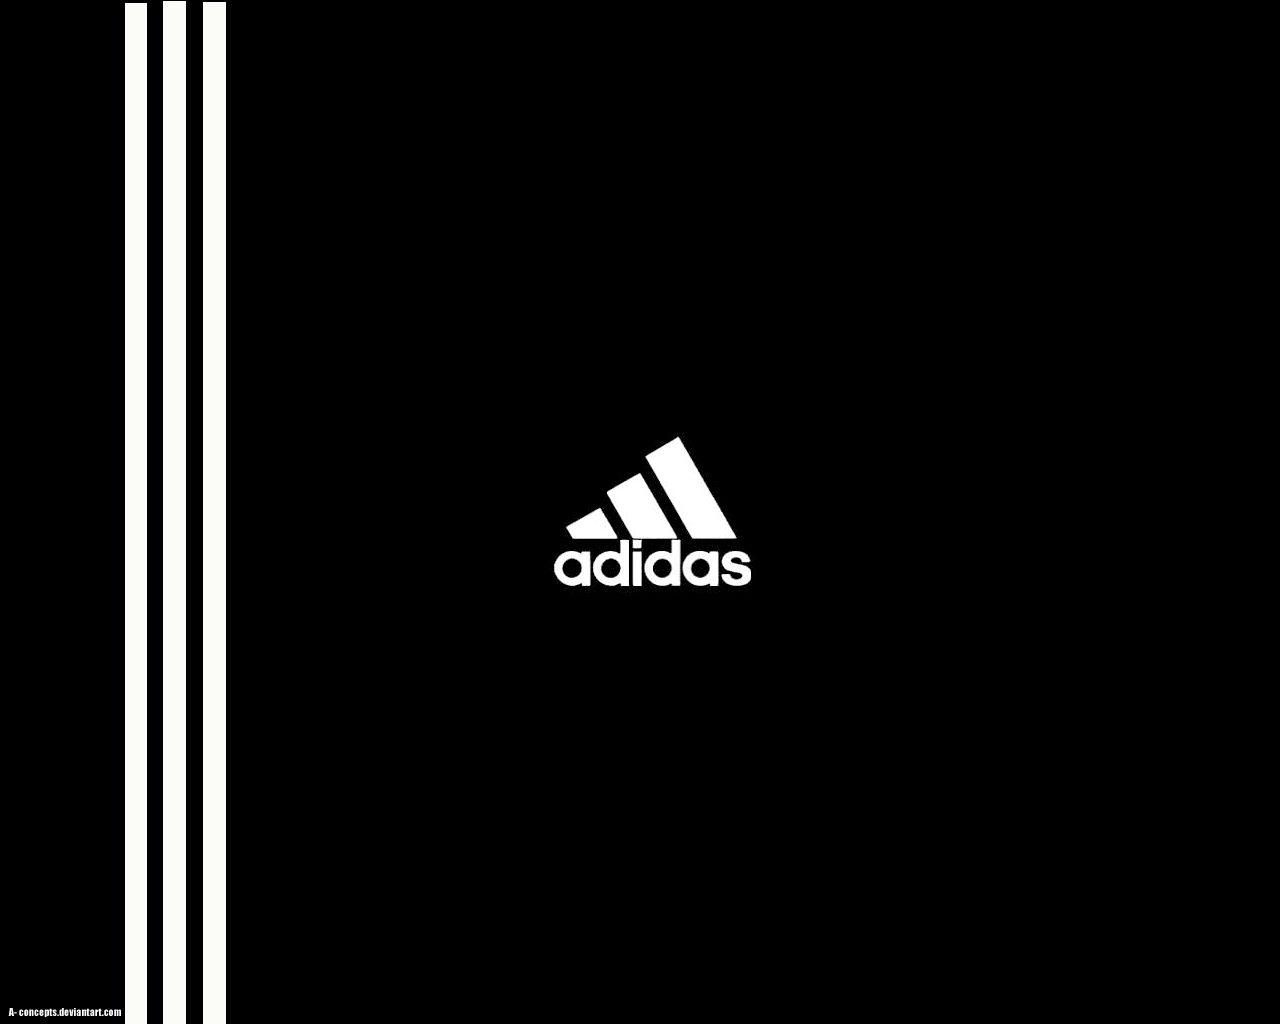 Adidas 3 Stripe Wallpapers on WallpaperDog